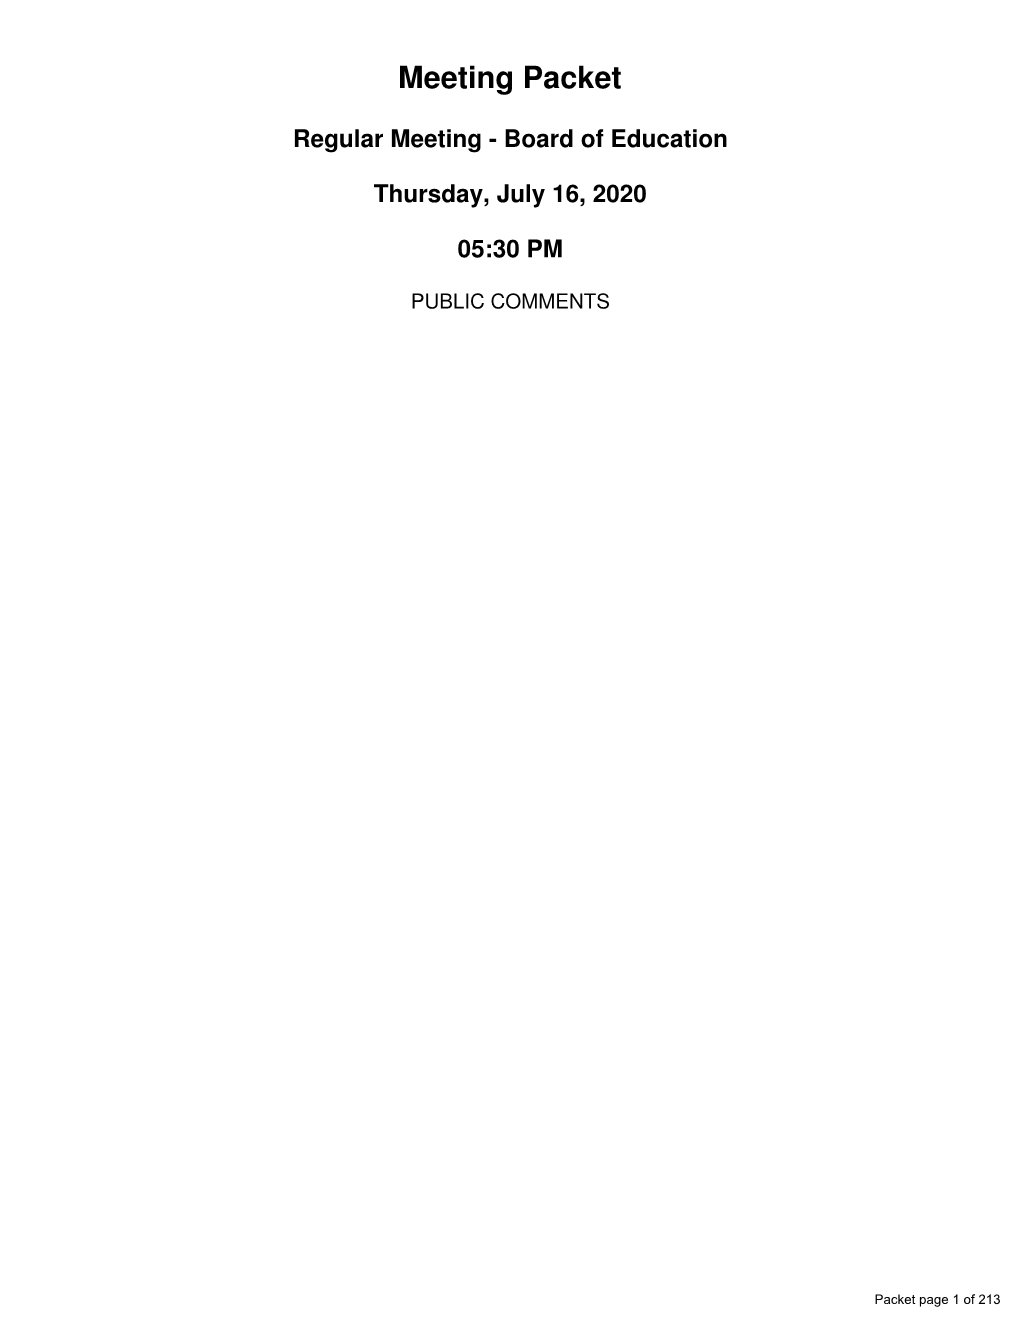 Regular Board Meeting Minutes - June 18 2020.Pdf (P